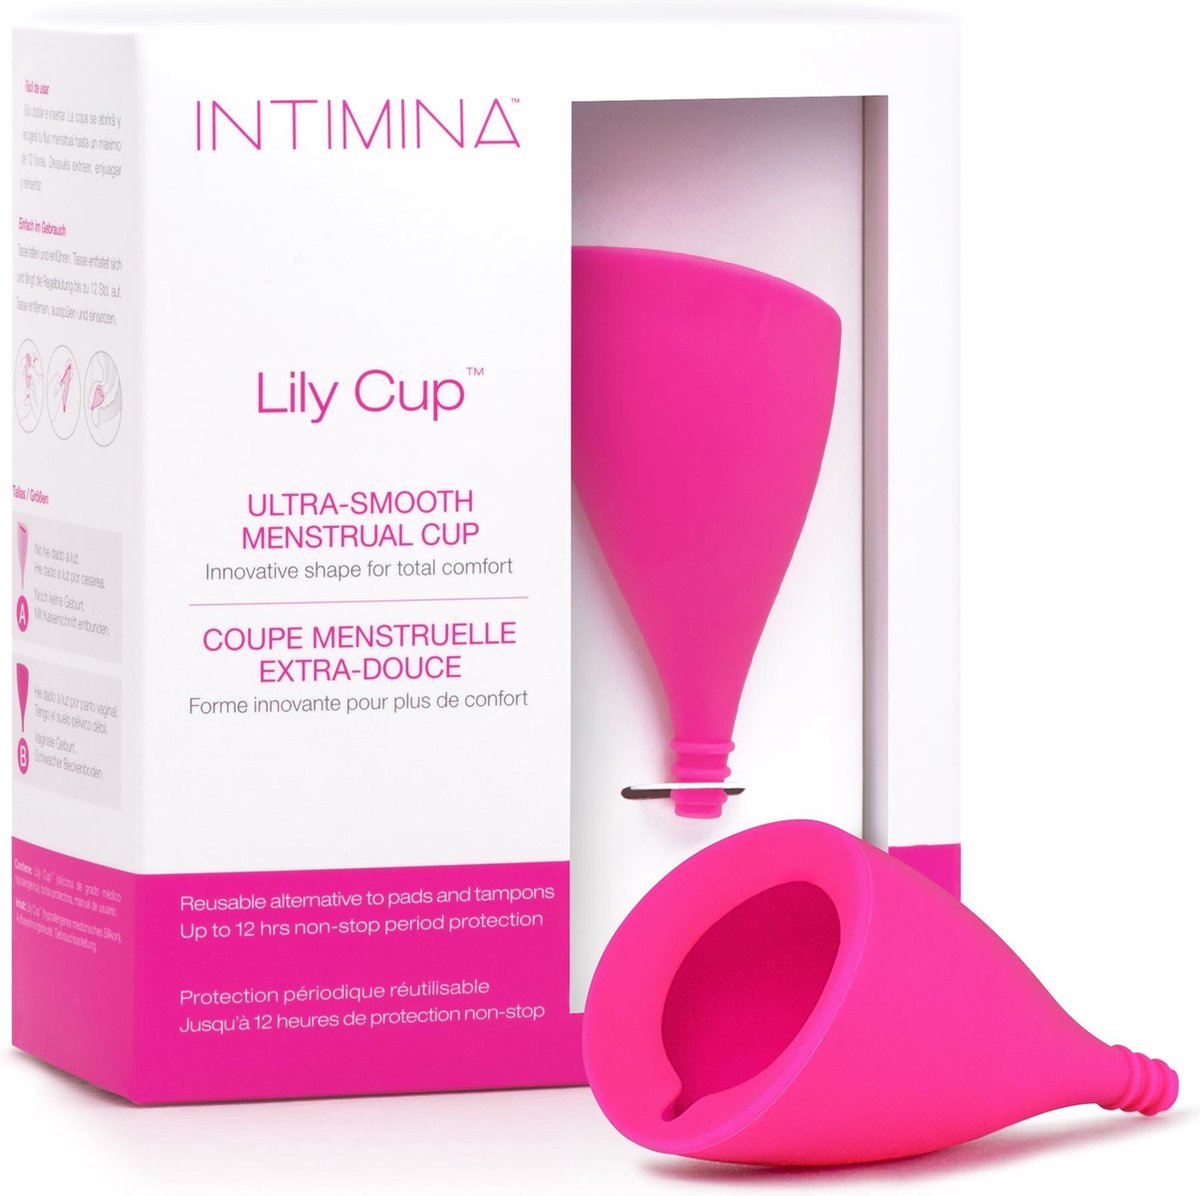 Intimina - Lily Cup maat B - dunne menstruatiecup, vrouwelijke cup, tot 8 uur te gebruiken - Intimina